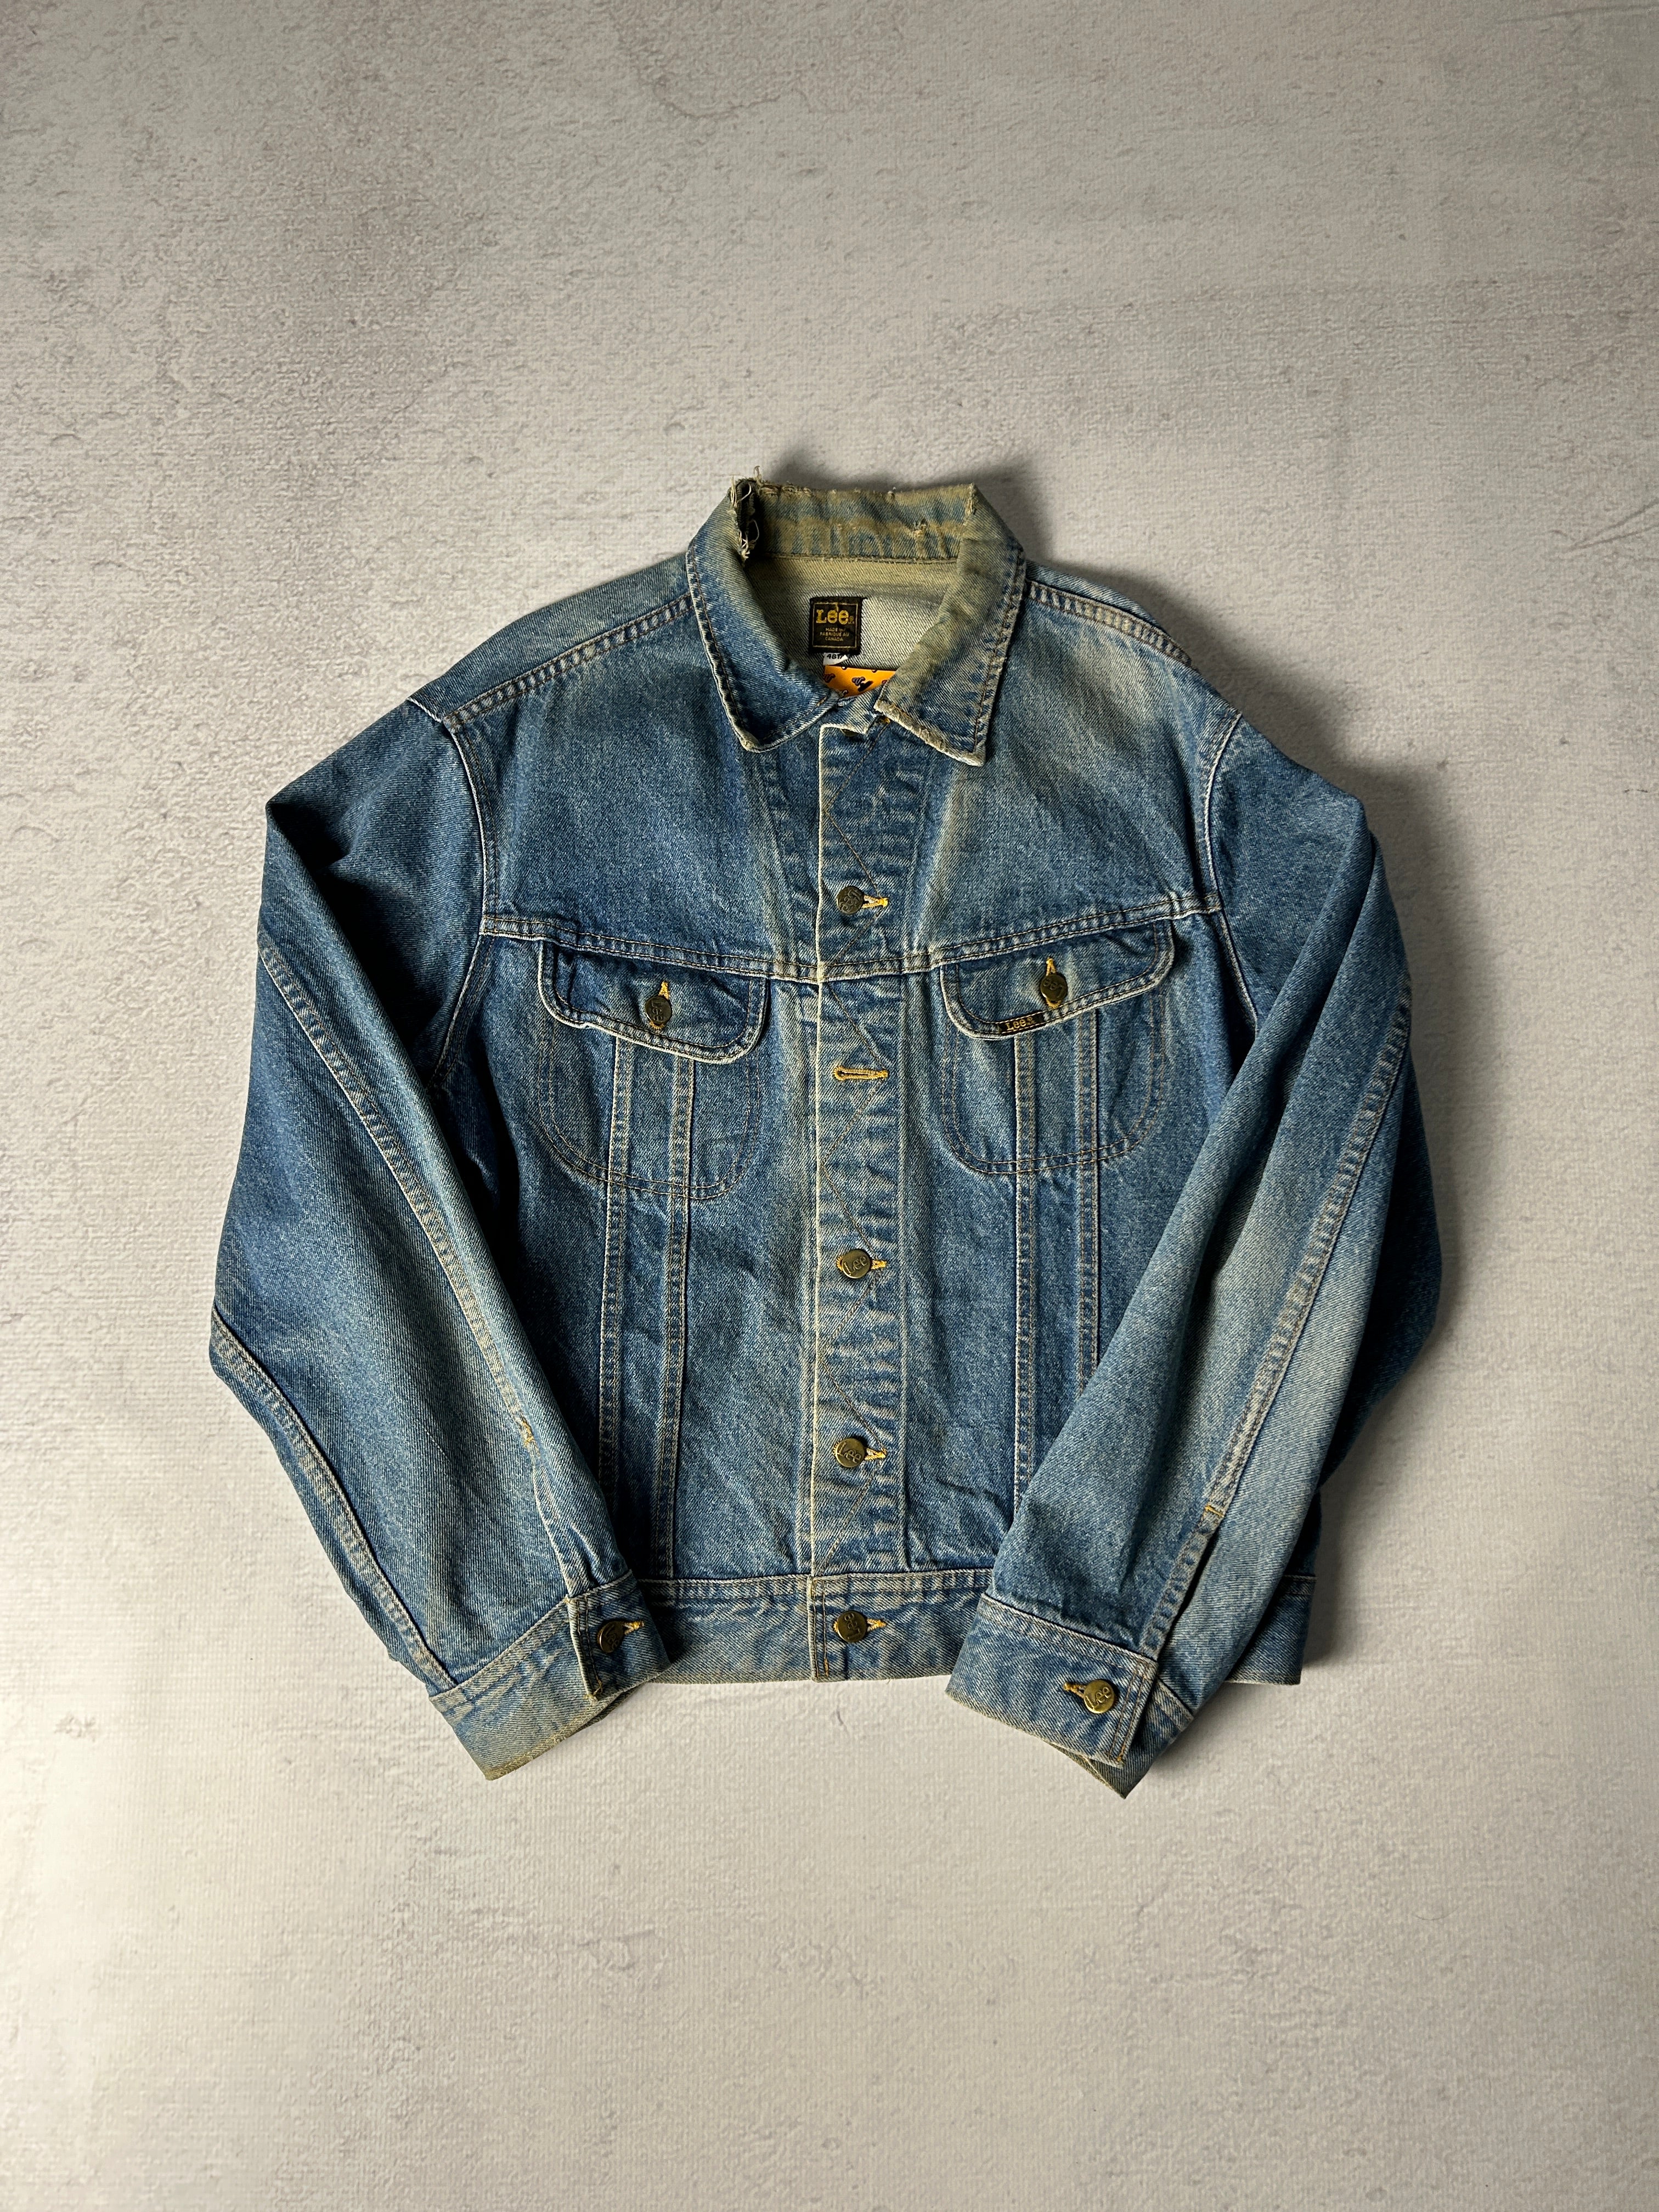 Vintage Lee Denim Jacket - Men's XL